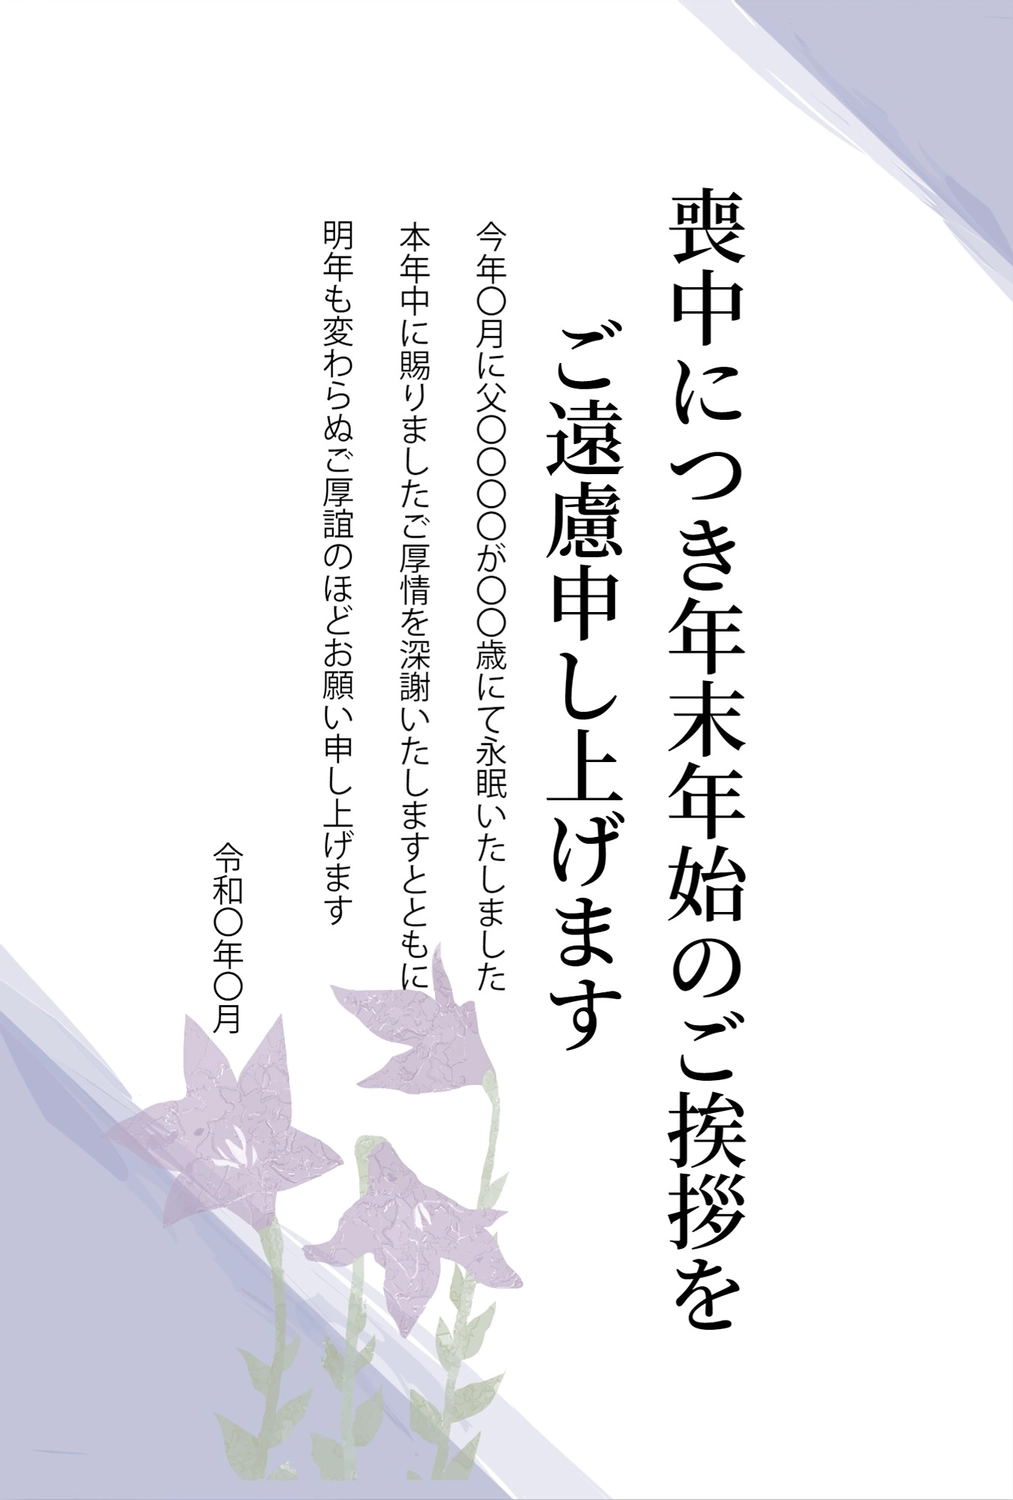 桔梗の喪中はがき, New Year's greeting card, purple flower, death, Mourning Postcard template